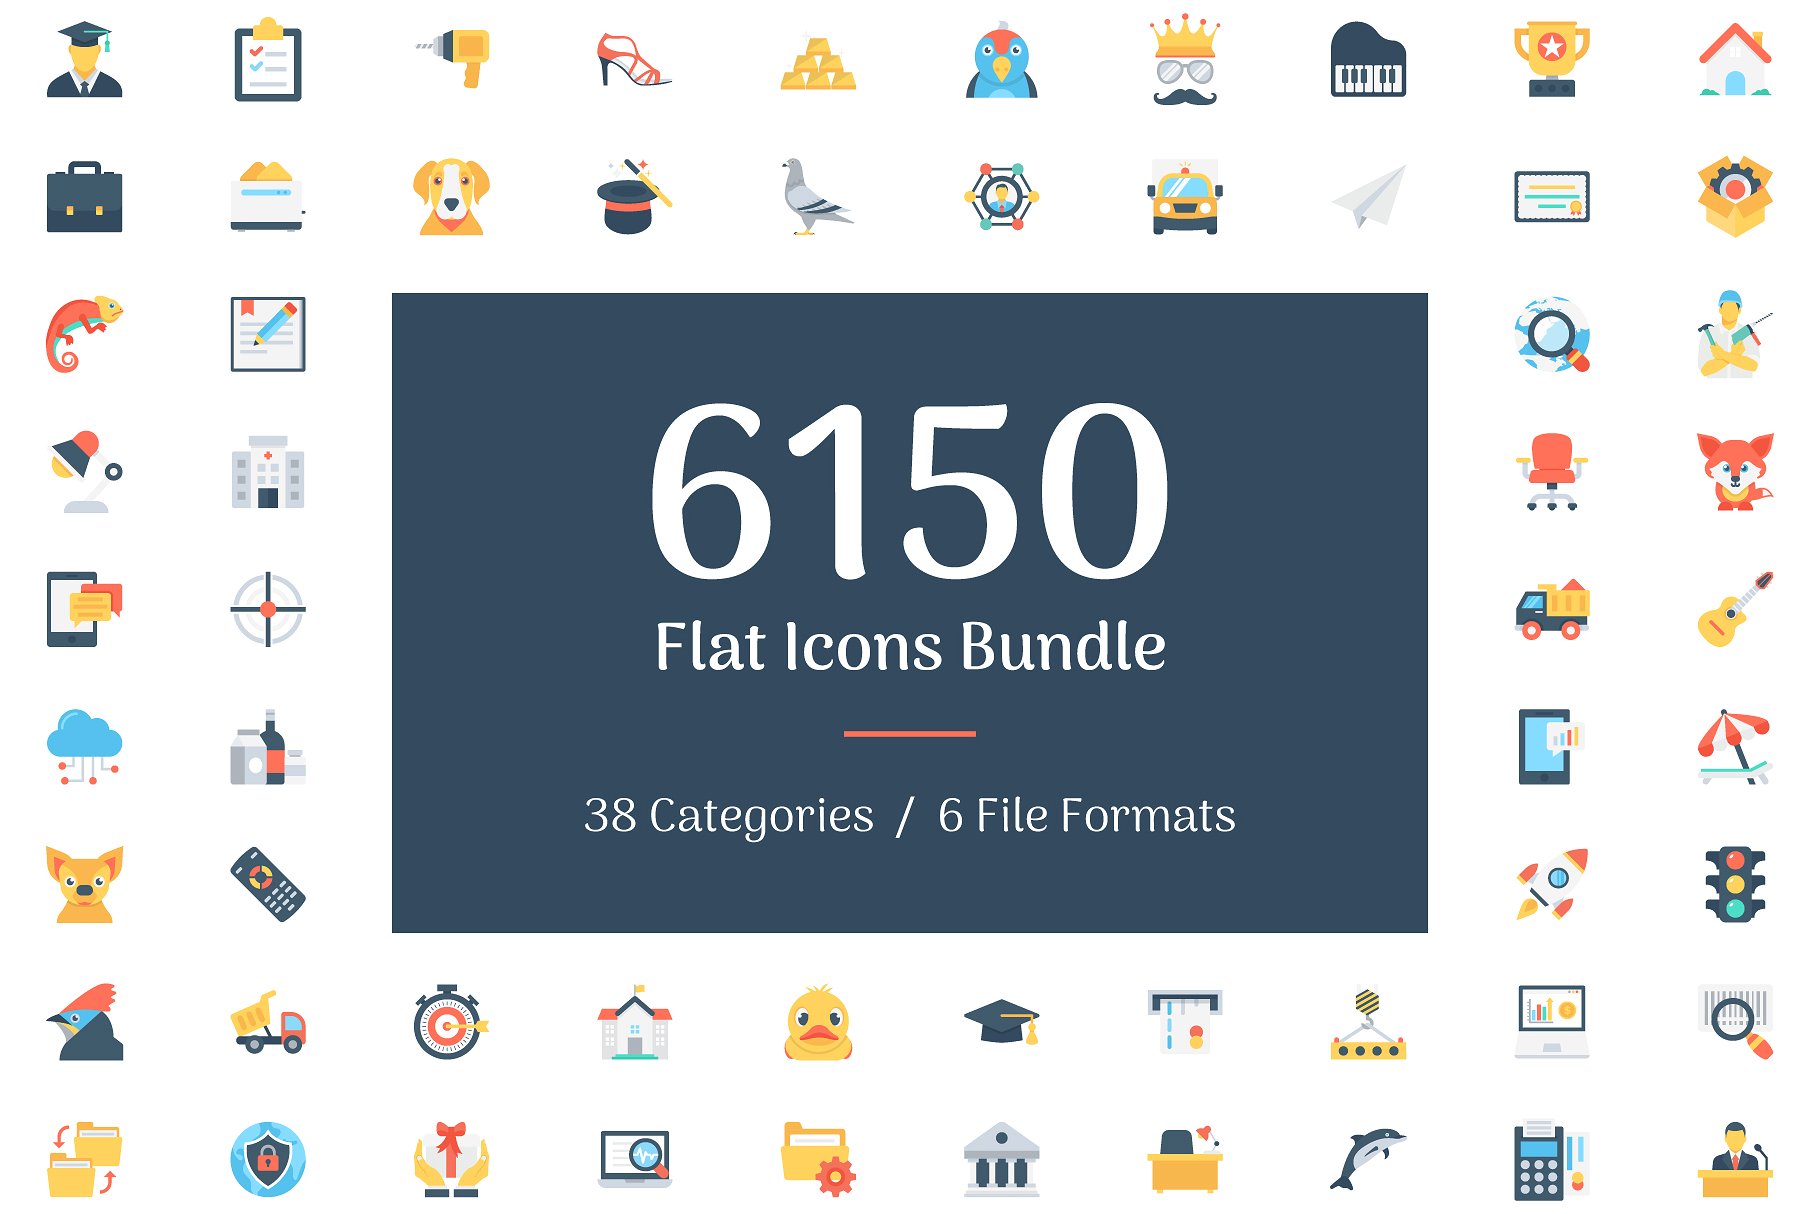 极力推荐：6150枚扁平图标 6150 Flat Icons Bundle插图